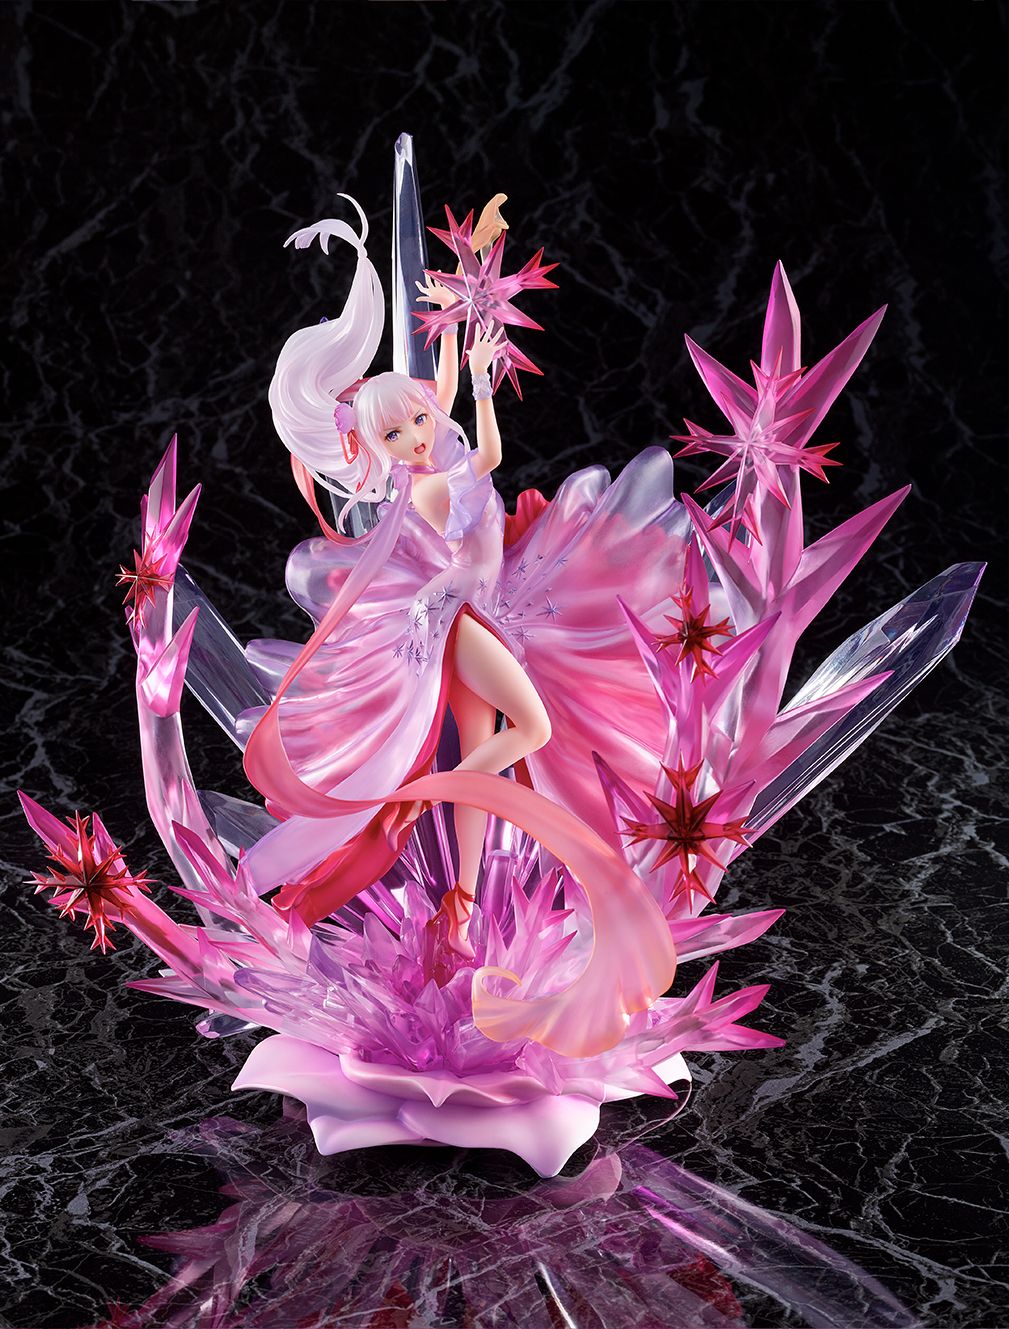 【限定販売】Re:ゼロから始める異世界生活『氷結のエミリア -Crystal Dress Ver-』 1/7 完成品フィギュア-009